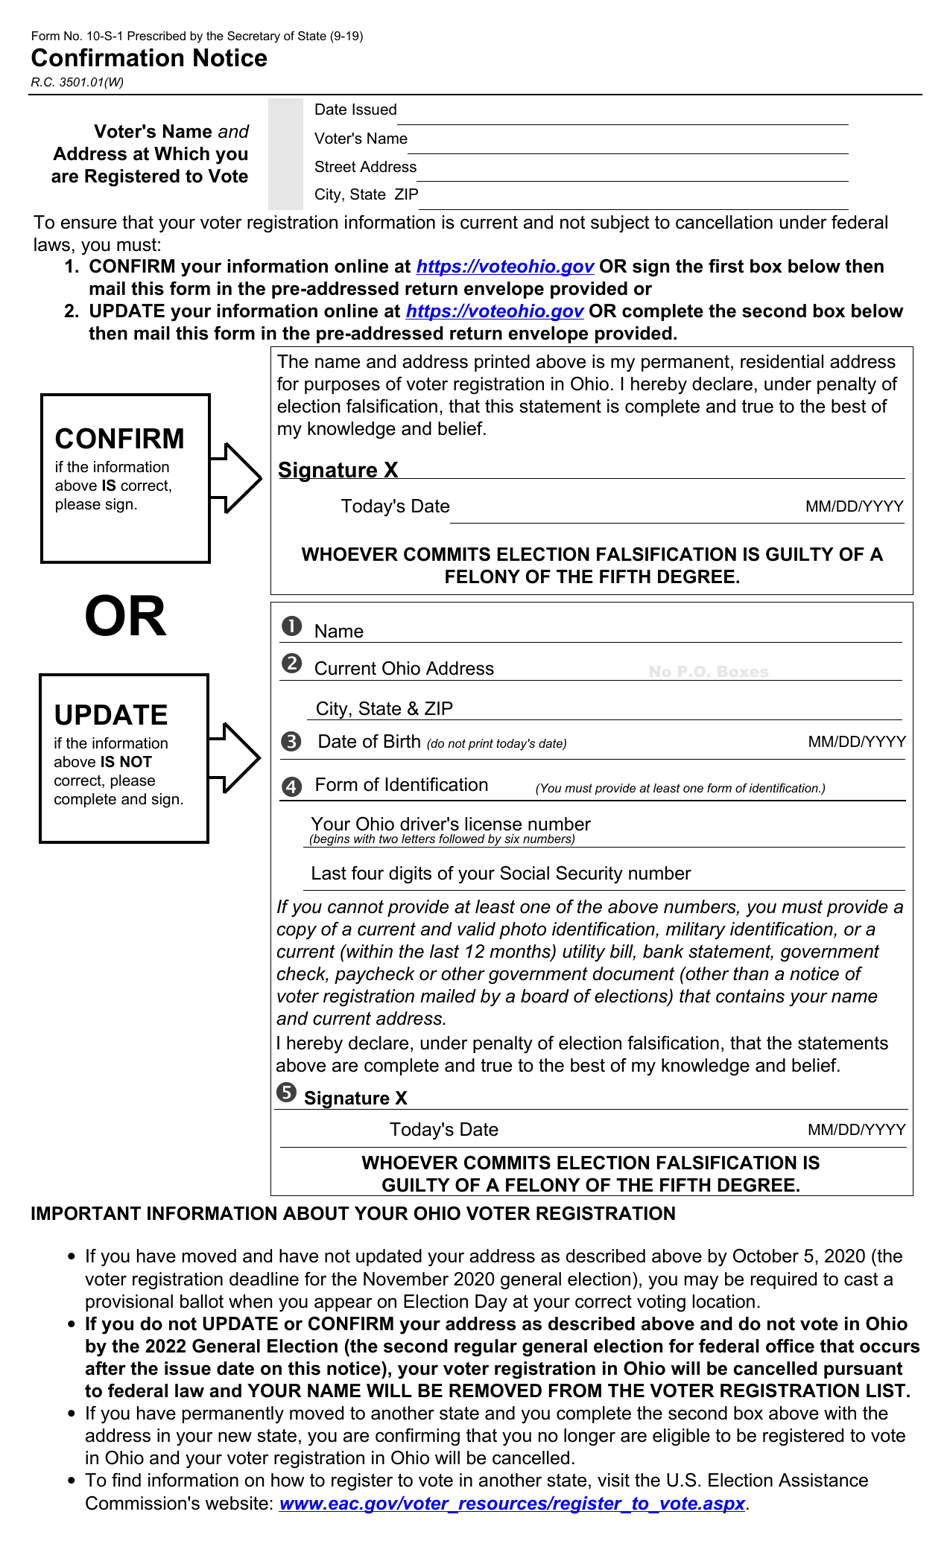 Form 10-S-1 Confirmation Notice - Ohio, Page 1